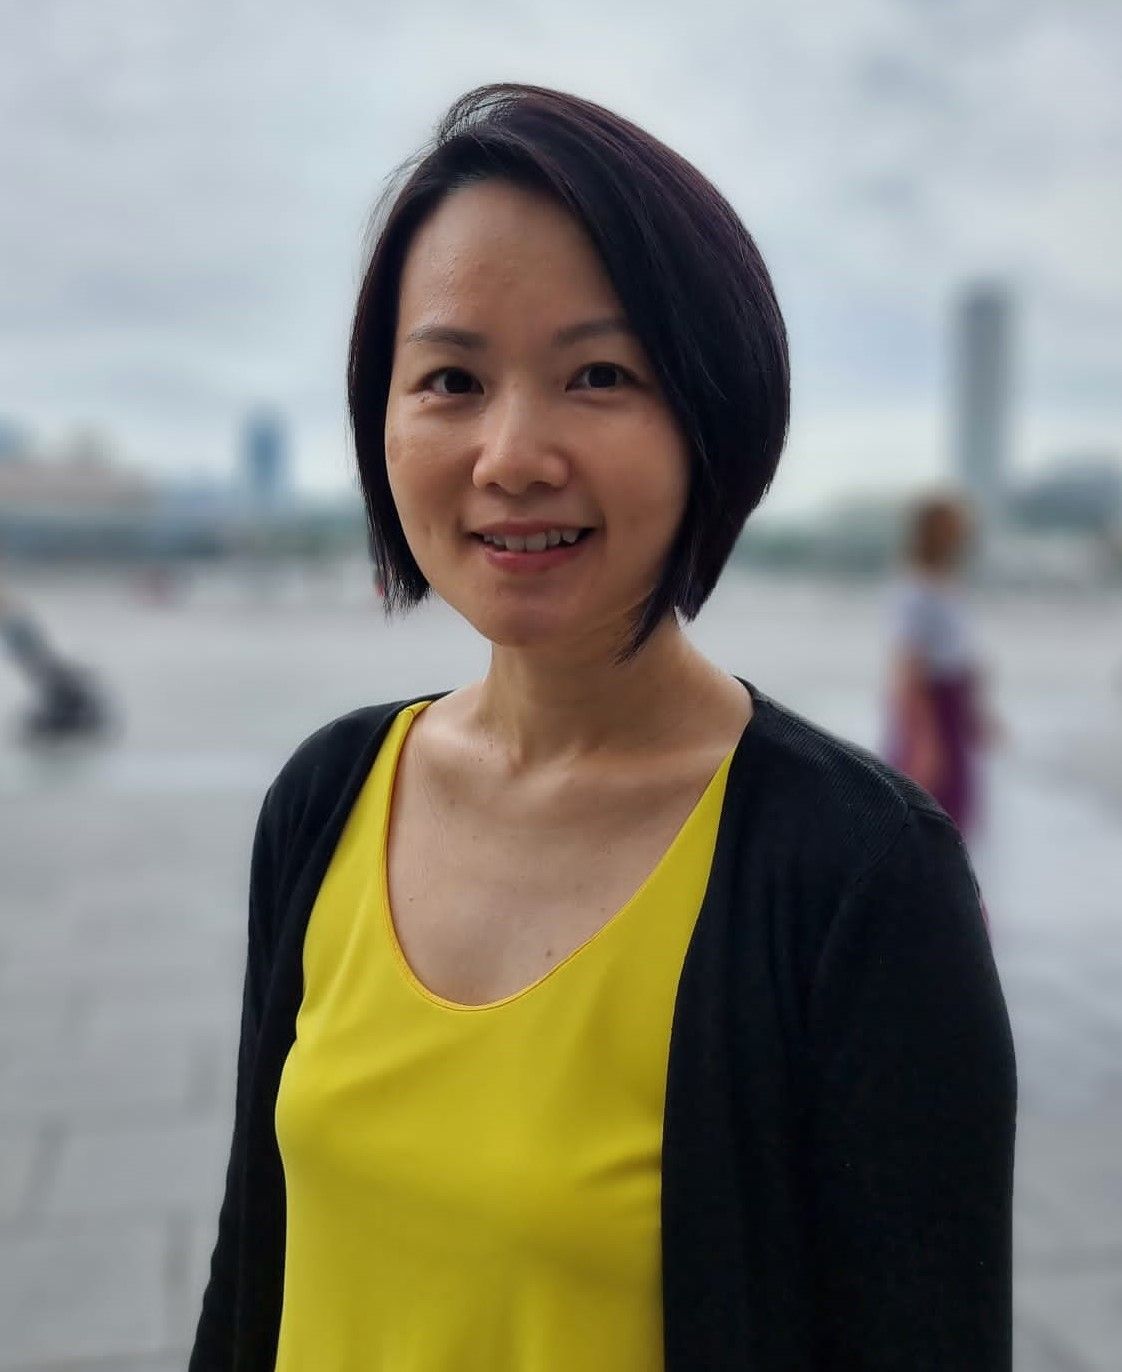 Profile Picture of Therapist, Ms Shi Min